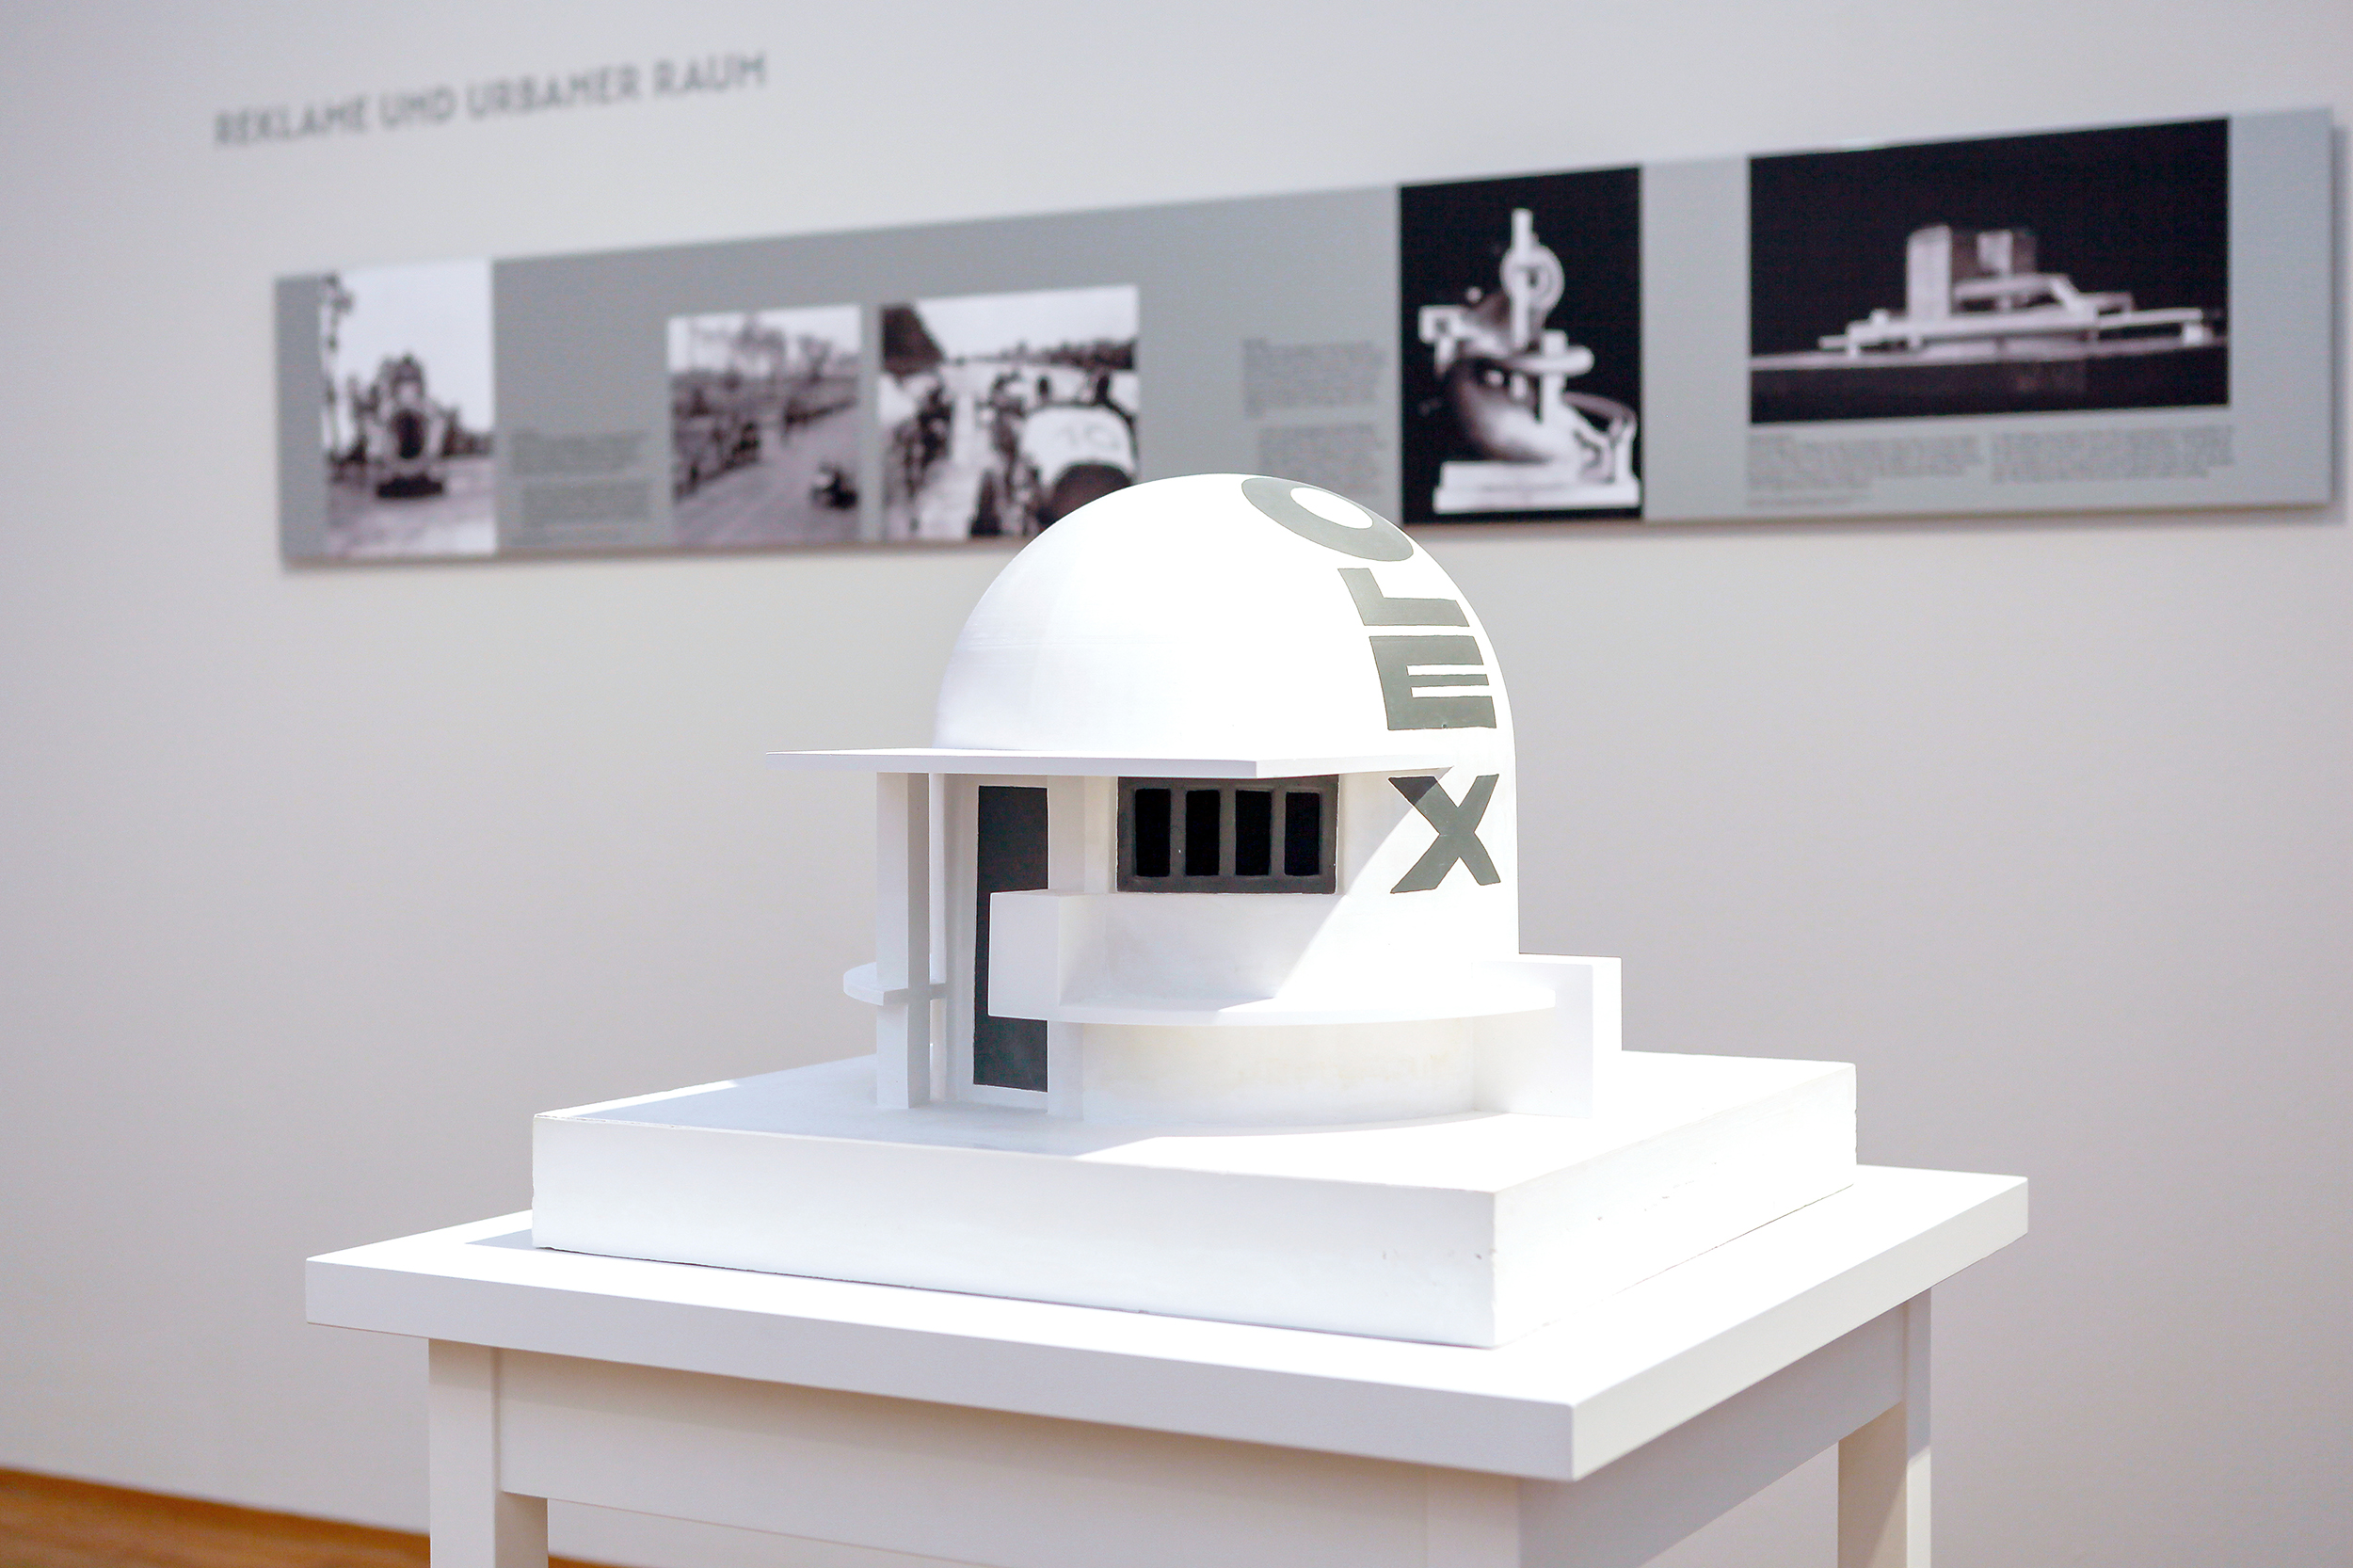 Foto: Modell der Olextankstelle in der Ausstellung